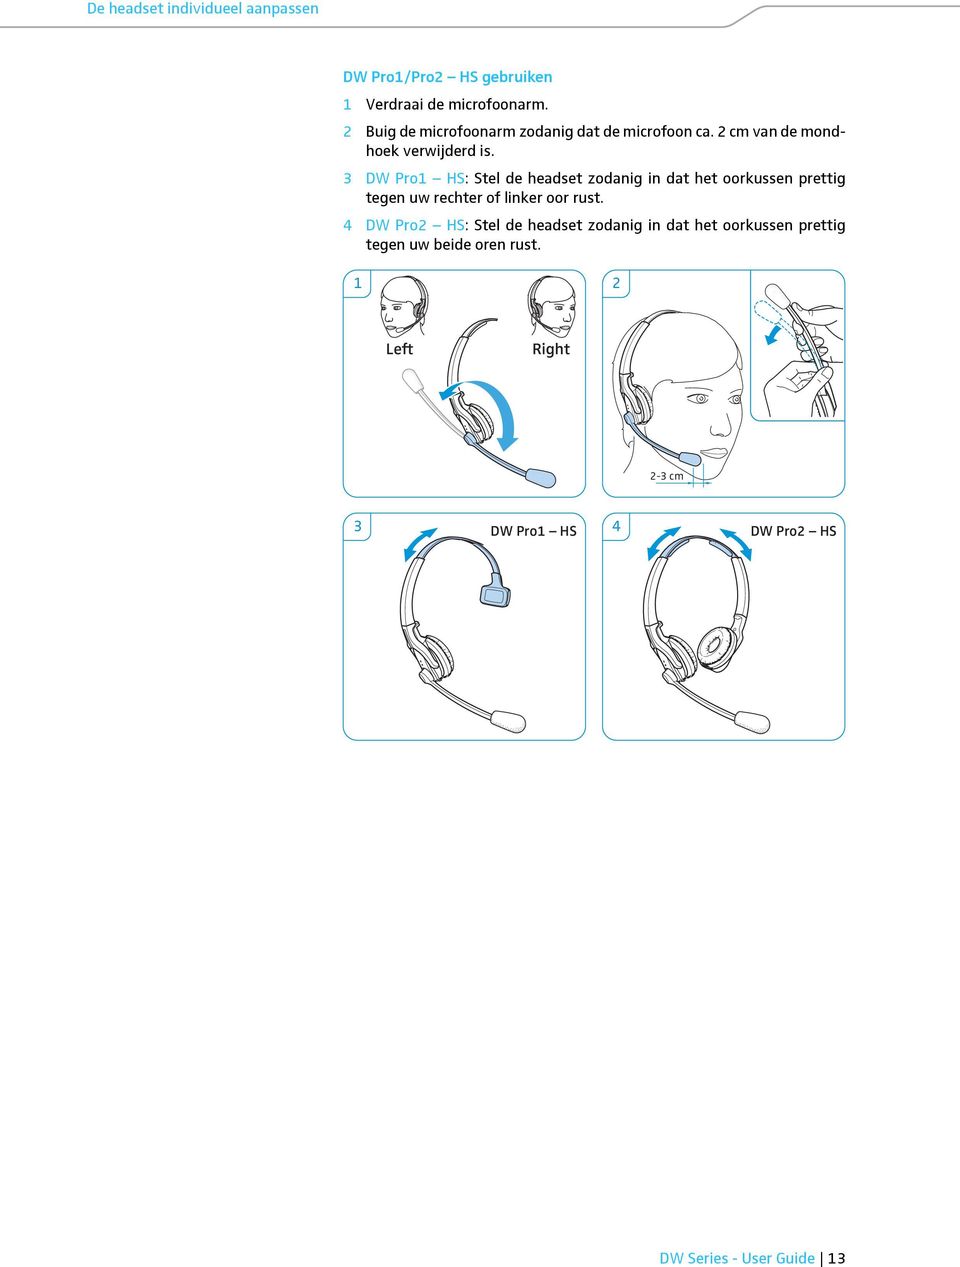 3 DW Pro1 HS: Stel de headset zodanig in dat het oorkussen prettig tegen uw rechter of linker oor rust.